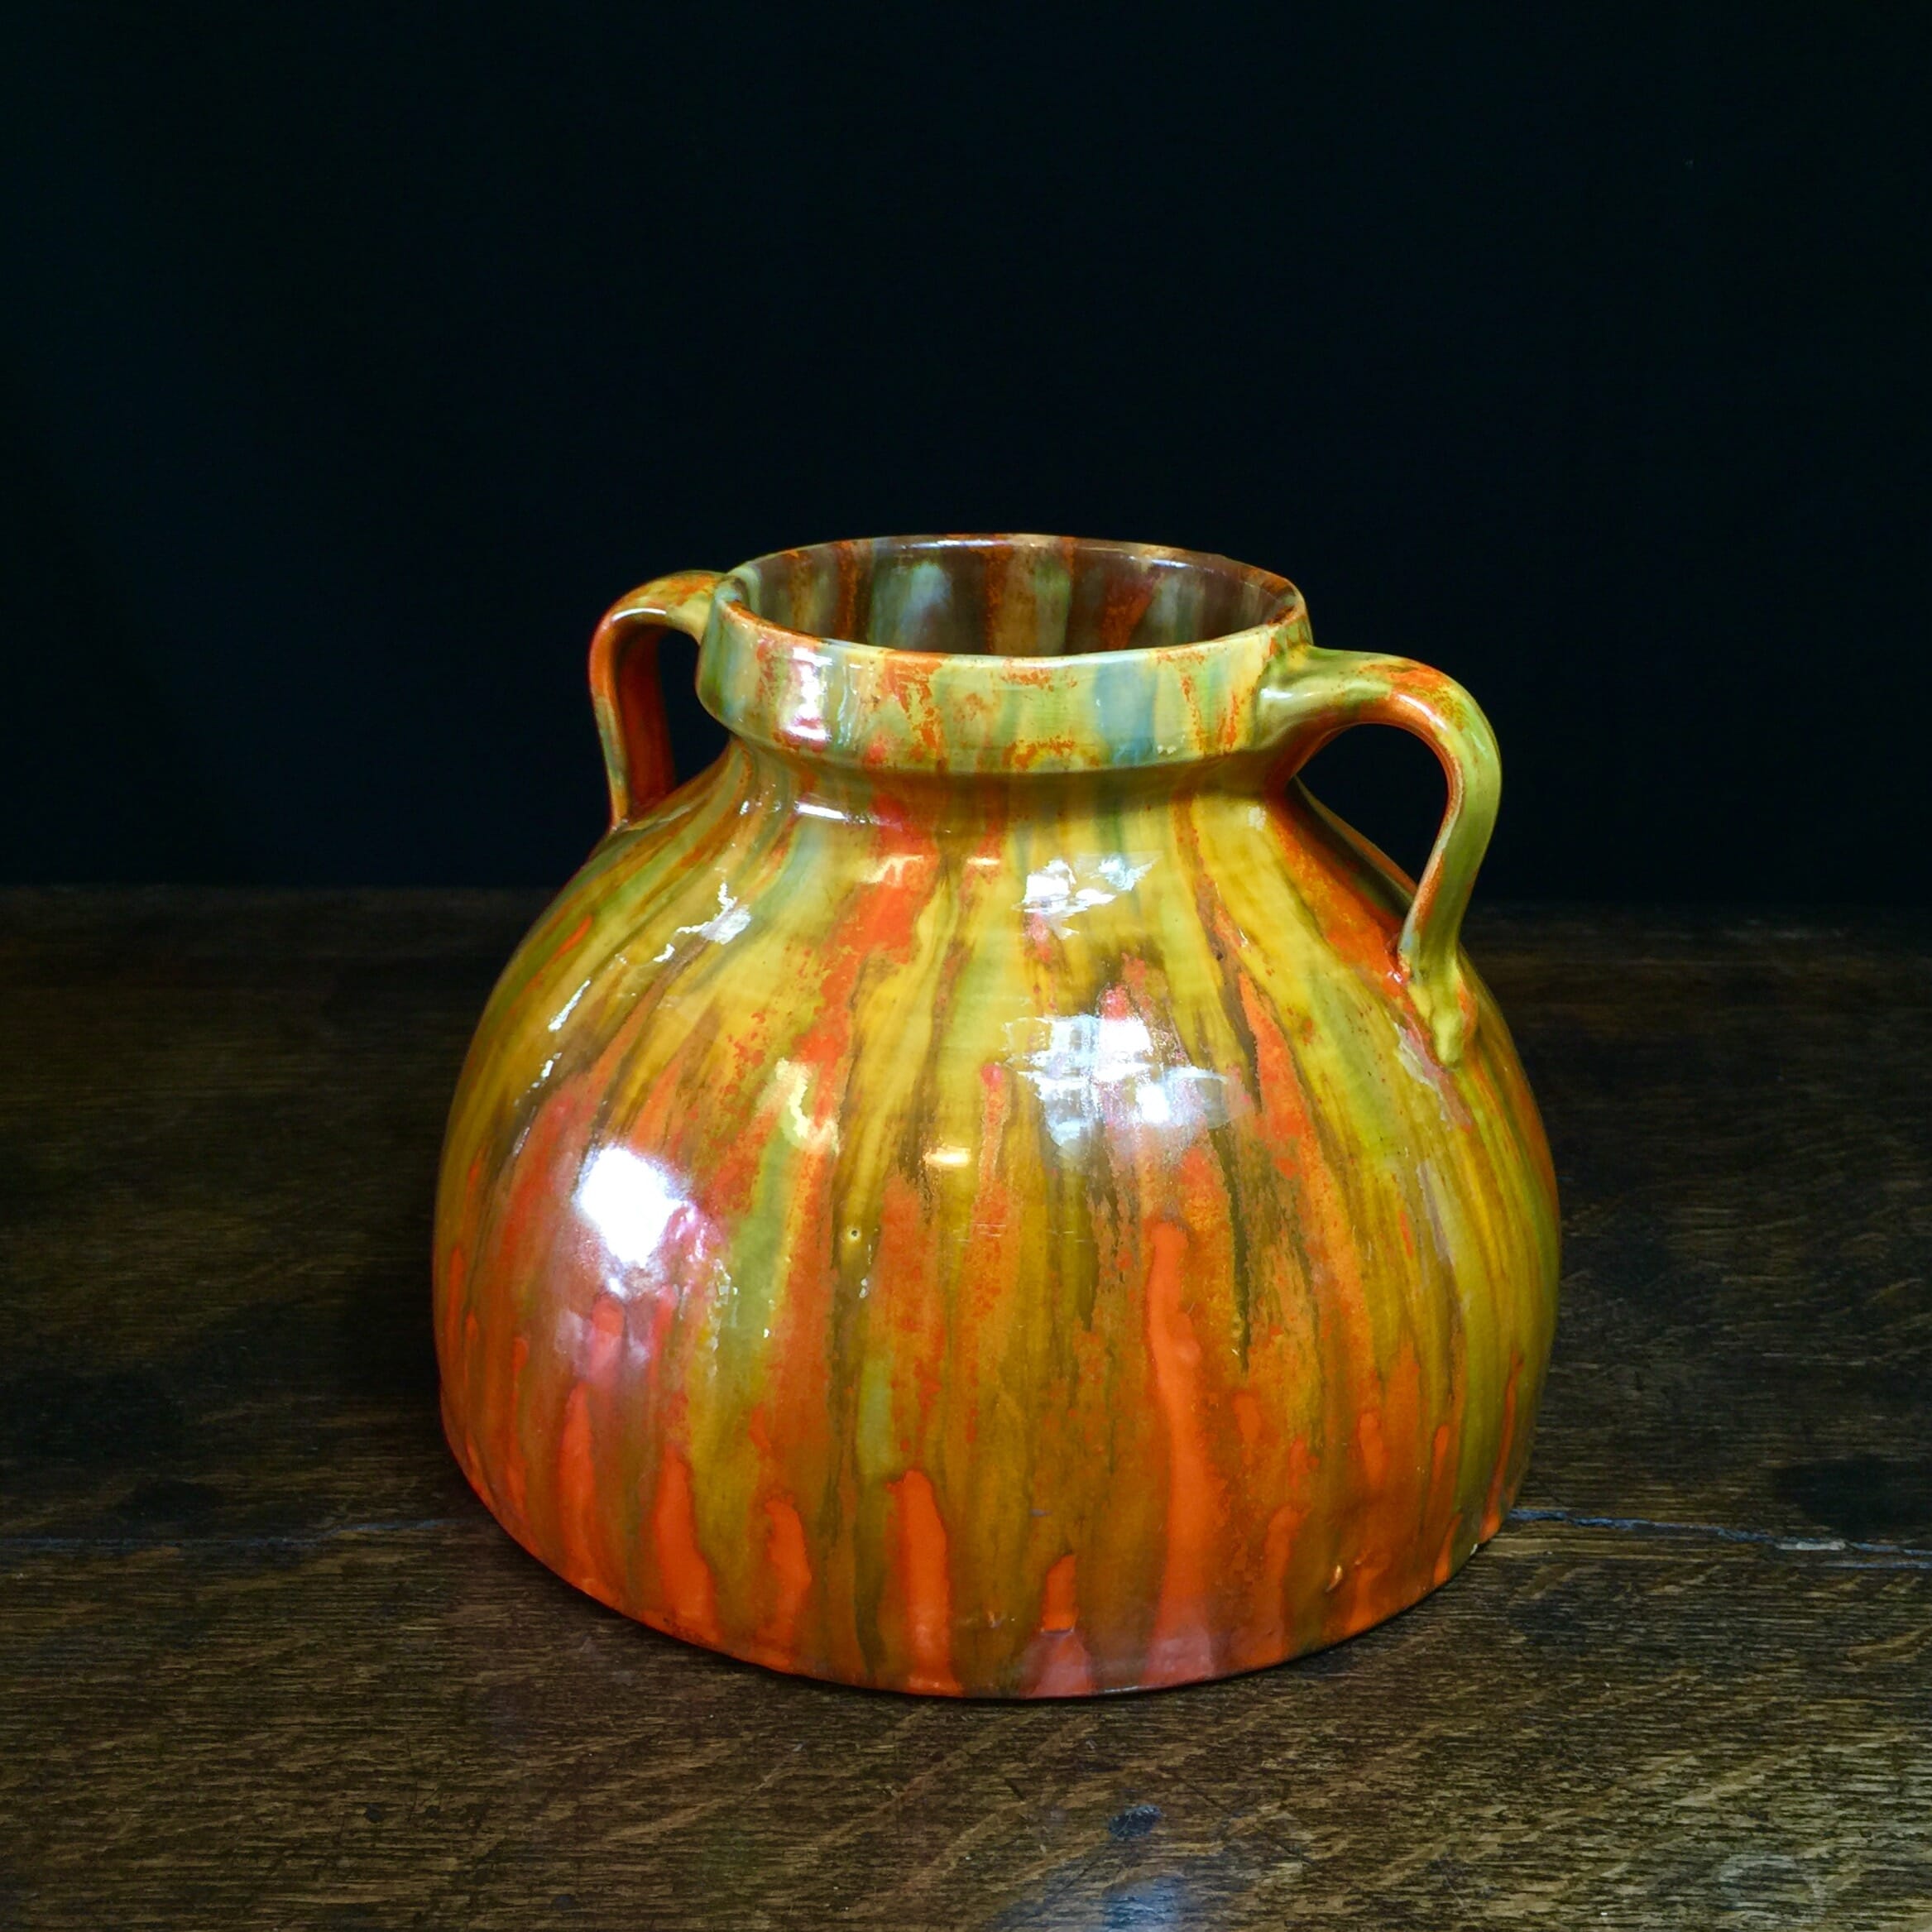 Barum ware vase, by Brannam of Barnstaple, c. 1920-0